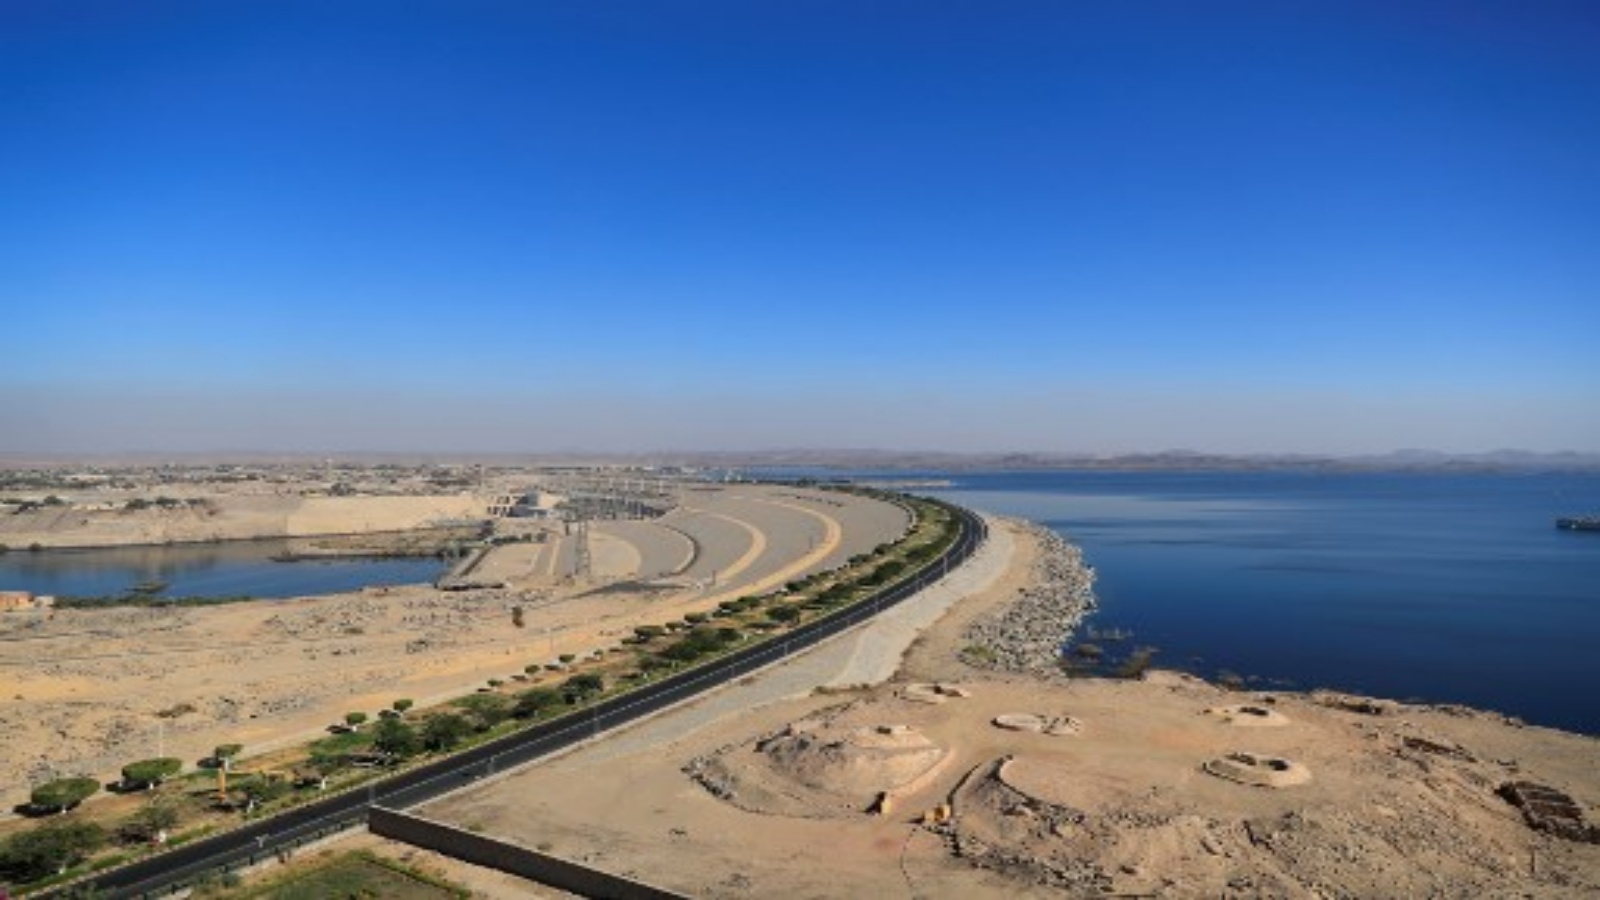  صورة التقطت في 3 يناير 2021 منظرًا عامًا للسد العالي في مصر (على اليسار) وبحيرة ناصر (على اليمين) في أسوان ، على بعد حوالي 920 كيلومترًا جنوب العاصمة القاهرة